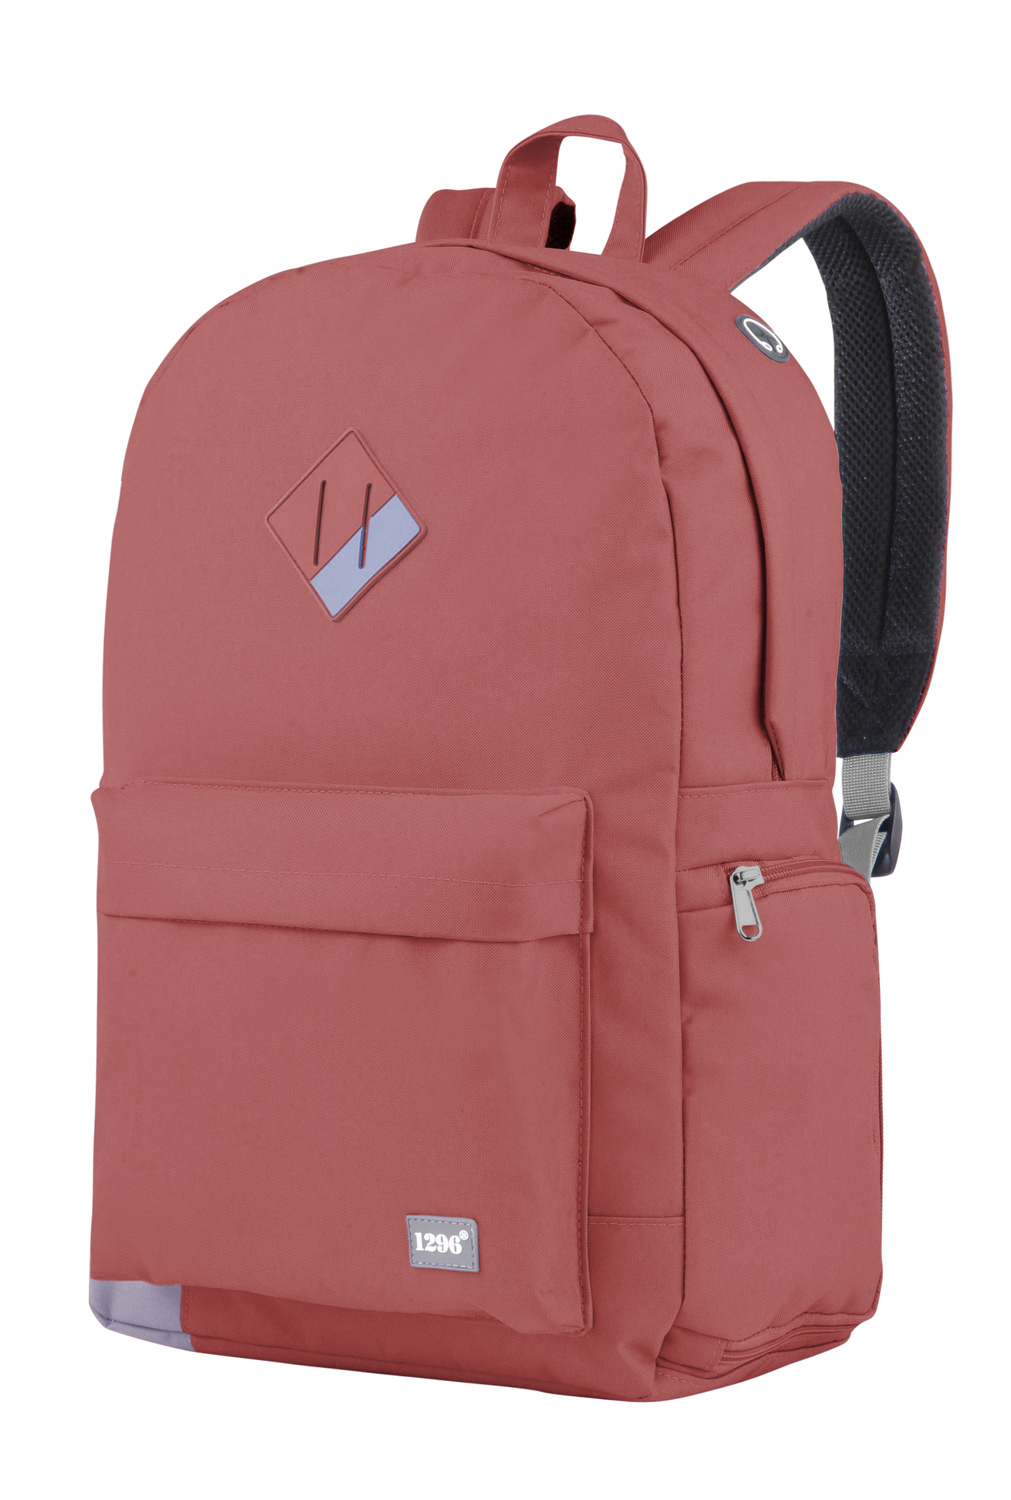 blnbag U4 - Sportrucksack Tagesrucksack Unisex mit Laptop- und Schuhfach für Notebook, 30 cm, 19 L, Korallrot